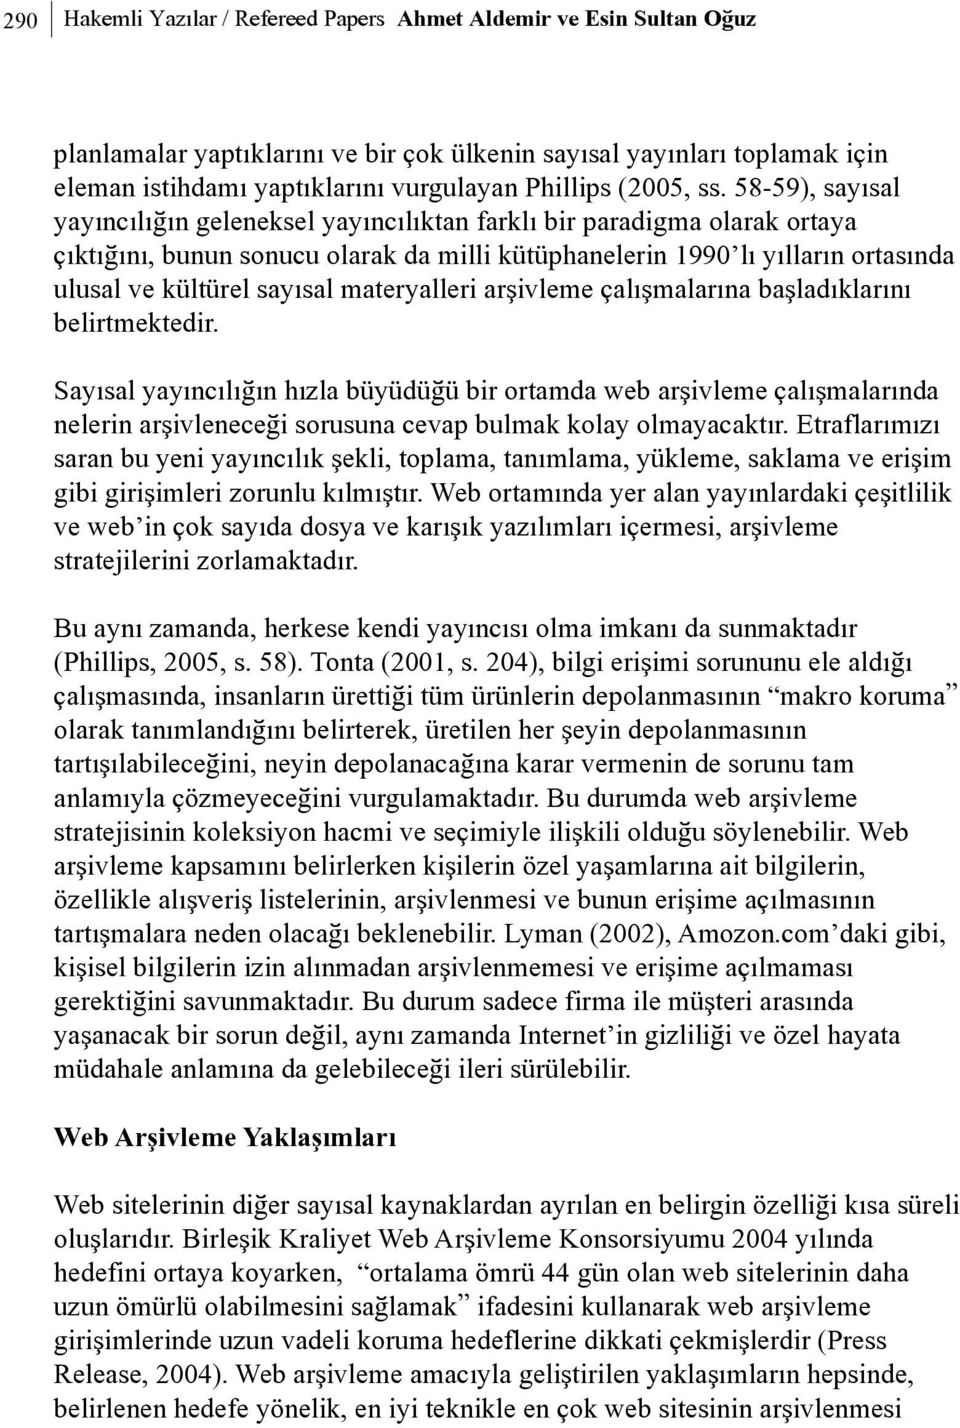 58-59), sayýsal yayýncýlýðýn geleneksel yayýncýlýktan farklý bir paradigma olarak ortaya çýktýðýný, bunun sonucu olarak da milli kütüphanelerin 1990 lý yýllarýn ortasýnda ulusal ve kültürel sayýsal